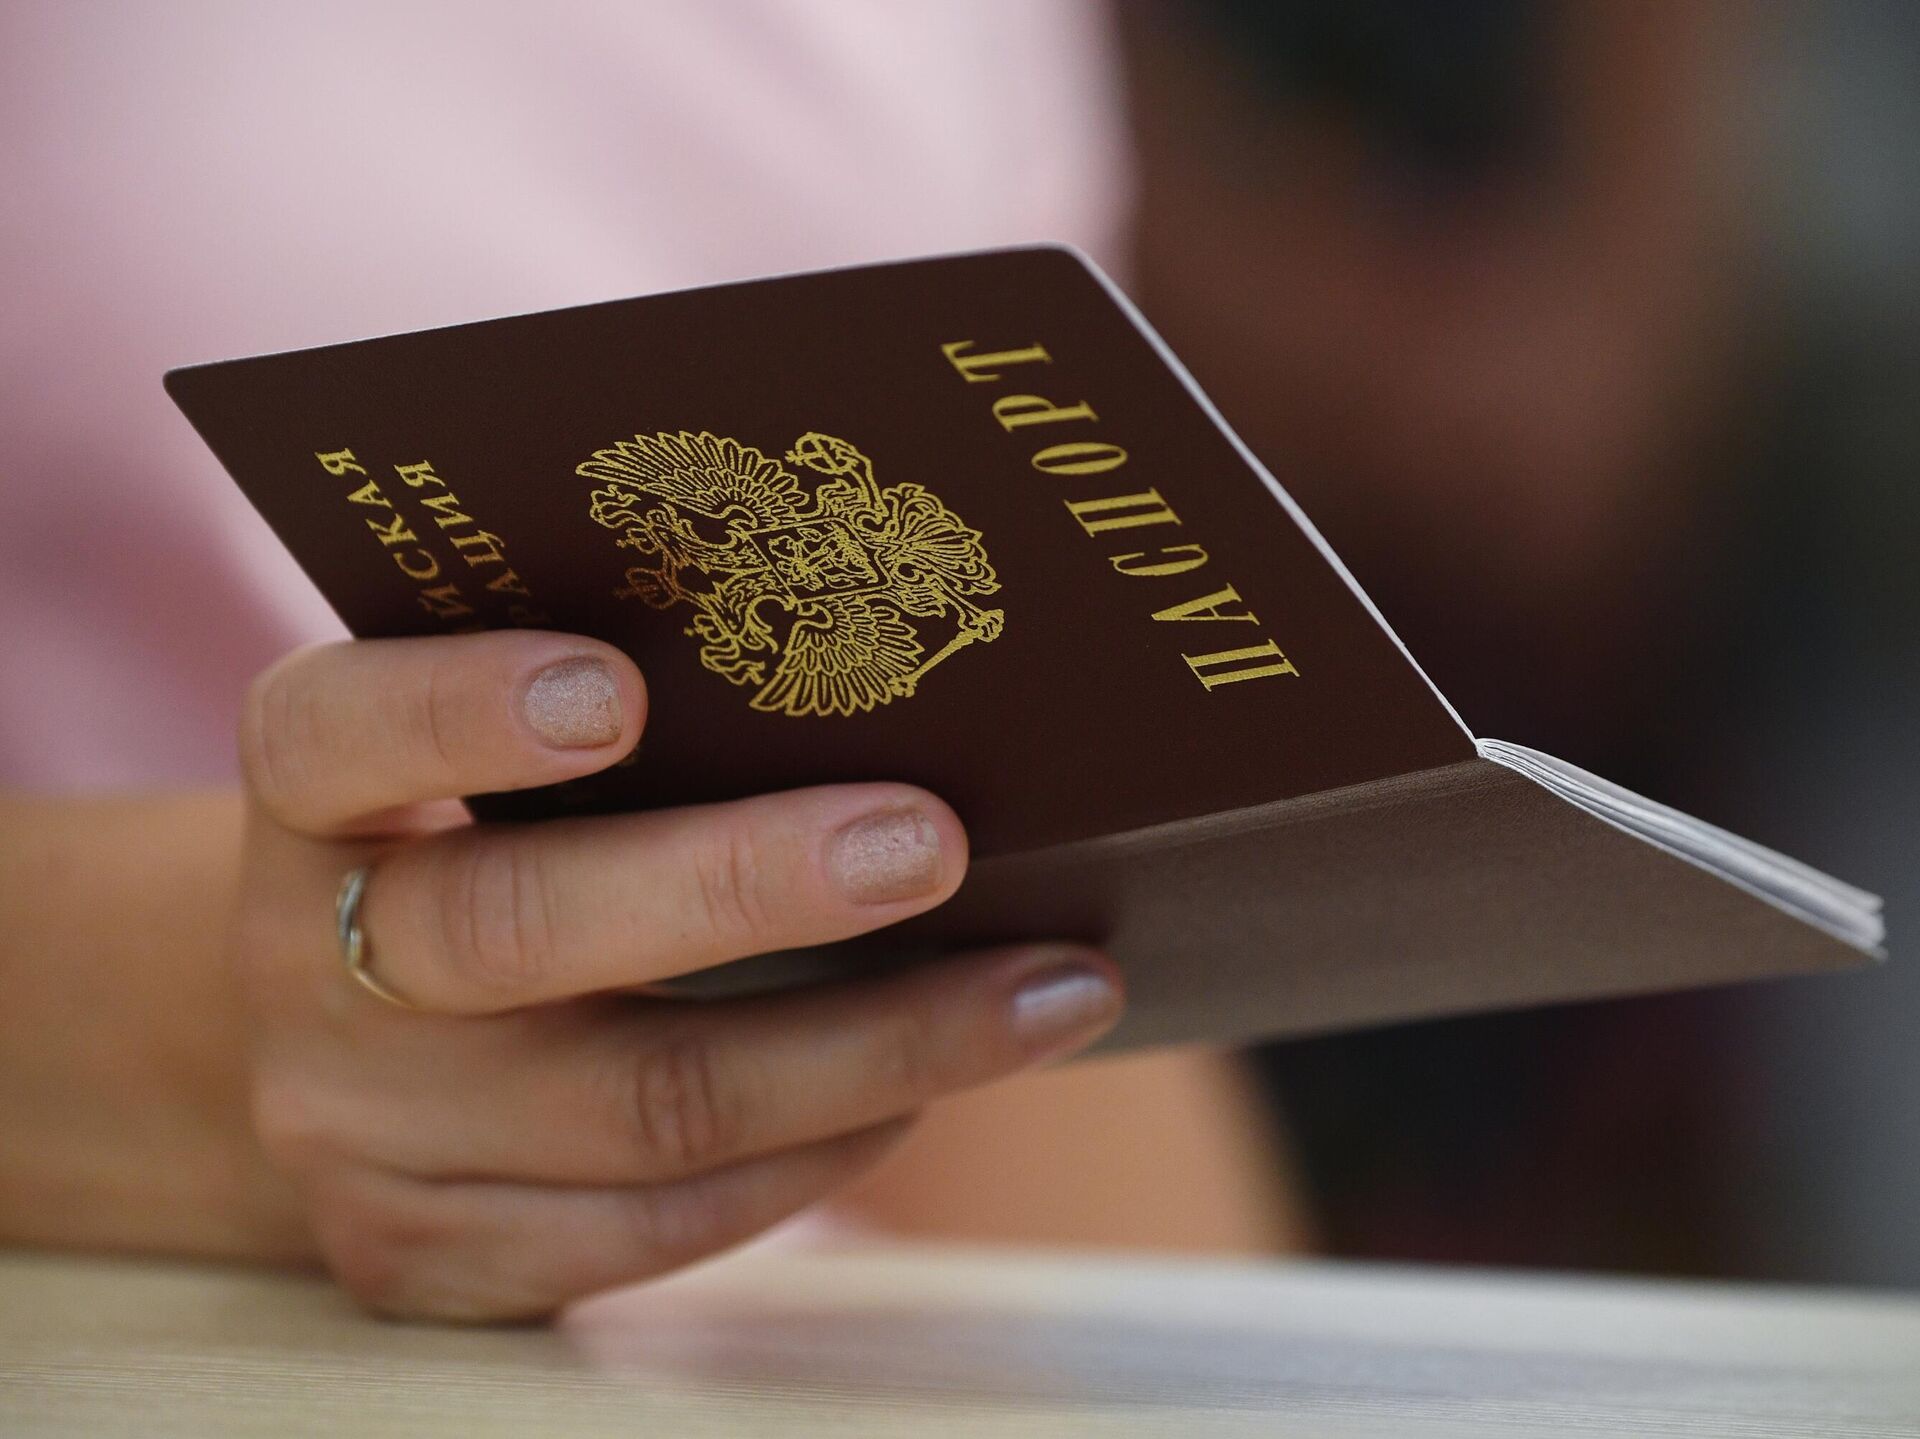 Процесс получения паспорта России